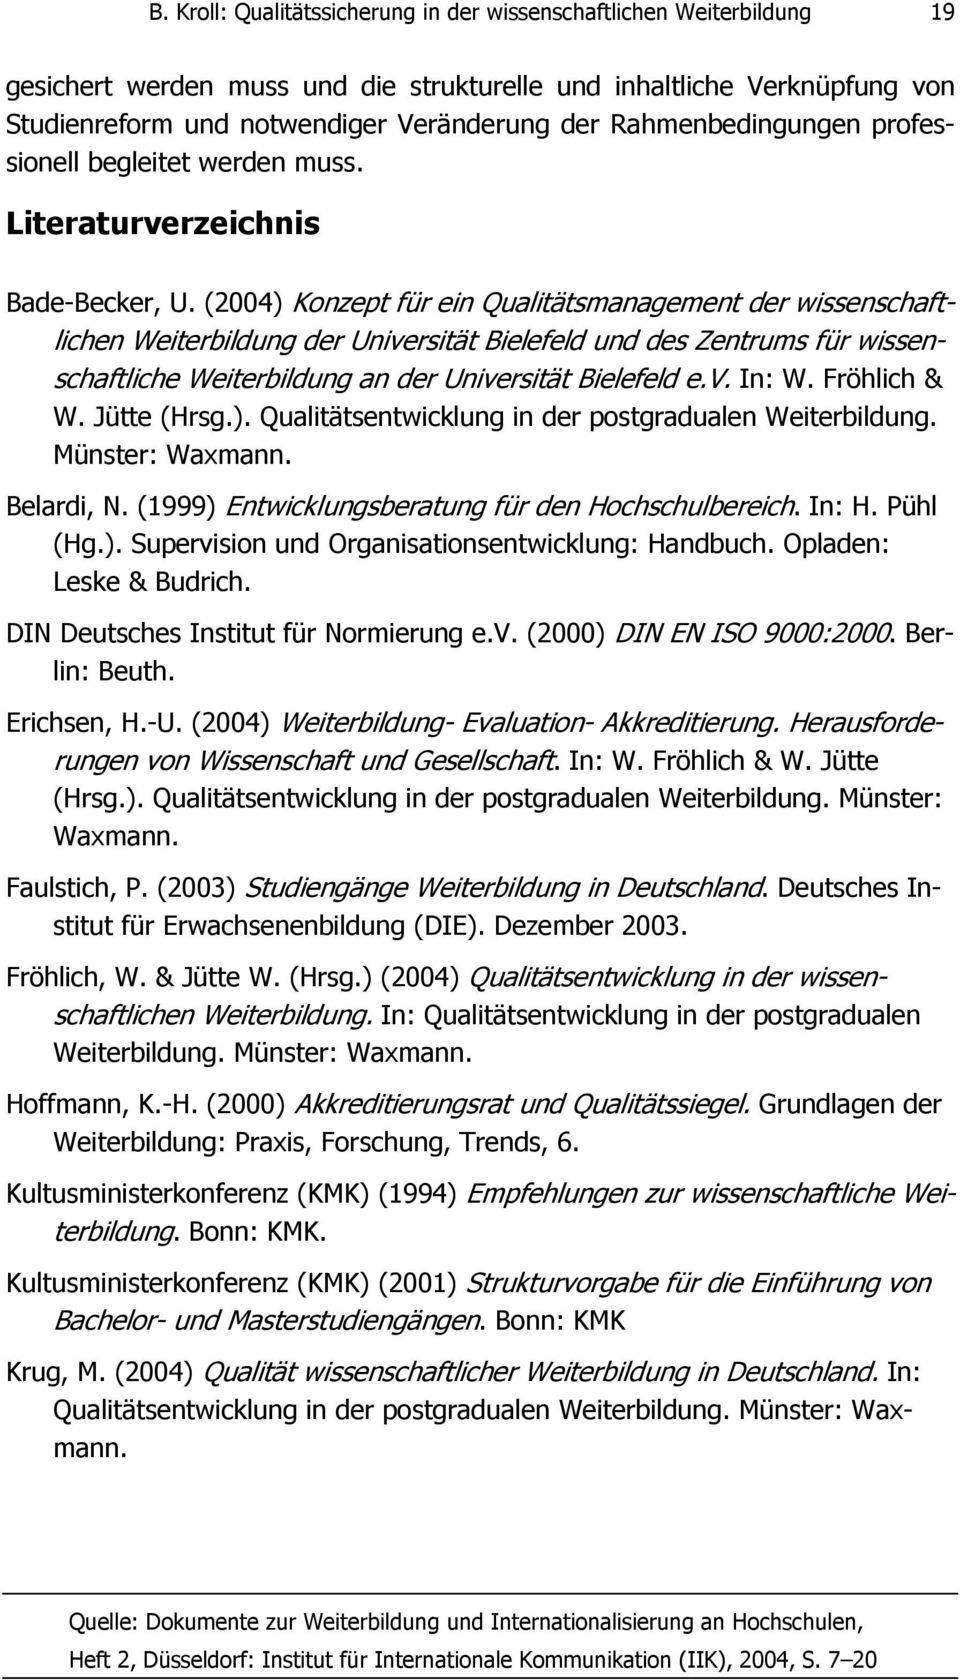 (2004) Konzept für ein Qualitätsmanagement der wissenschaftlichen Weiterbildung der Universität Bielefeld und des Zentrums für wissenschaftliche Weiterbildung an der Universität Bielefeld e.v. In: W.